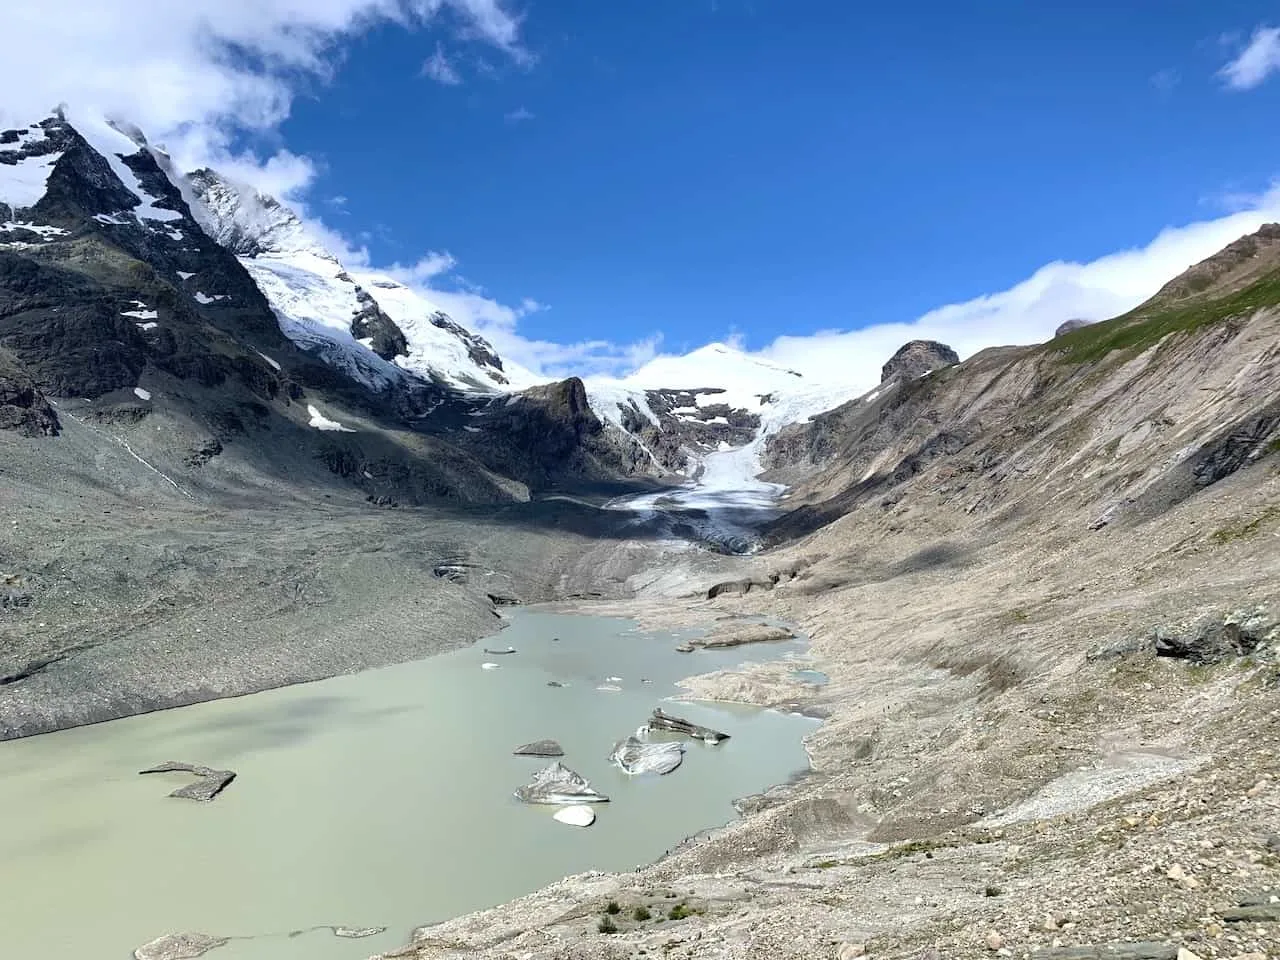 Pasterze Glacier Hiking Route